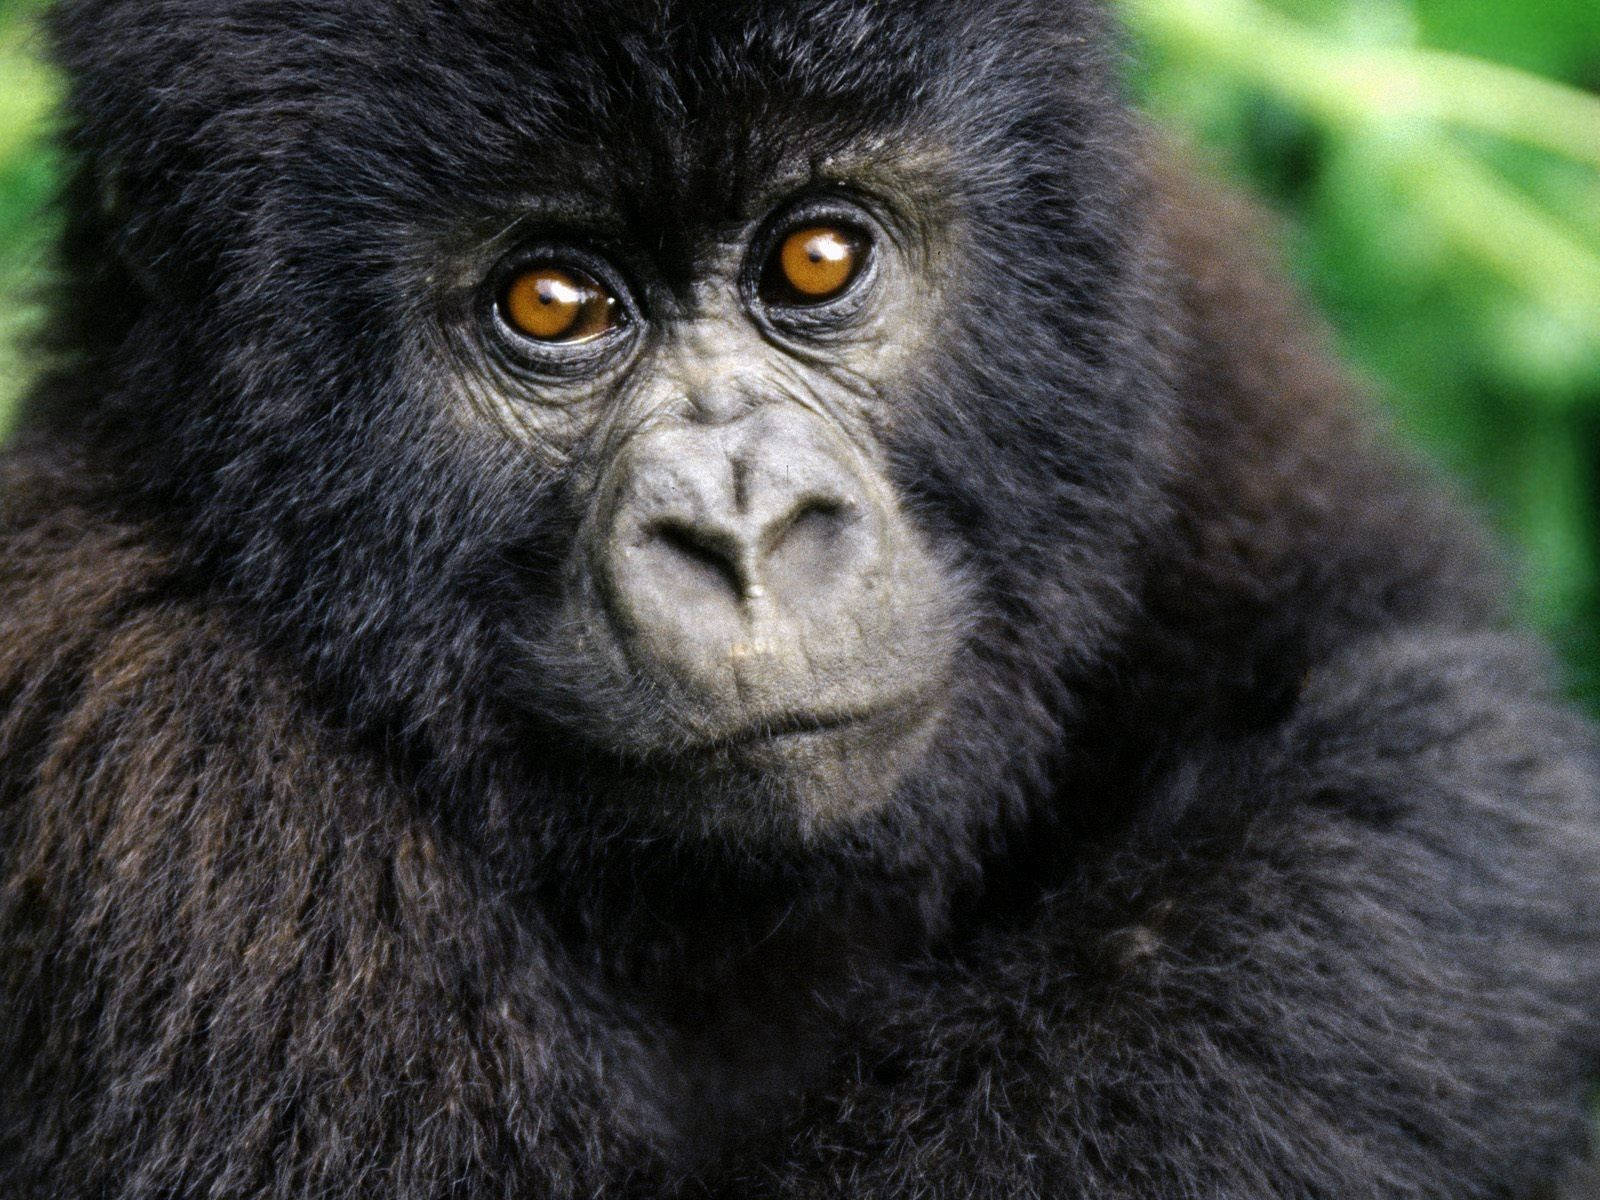 An Adorable Baby Gorilla Cub